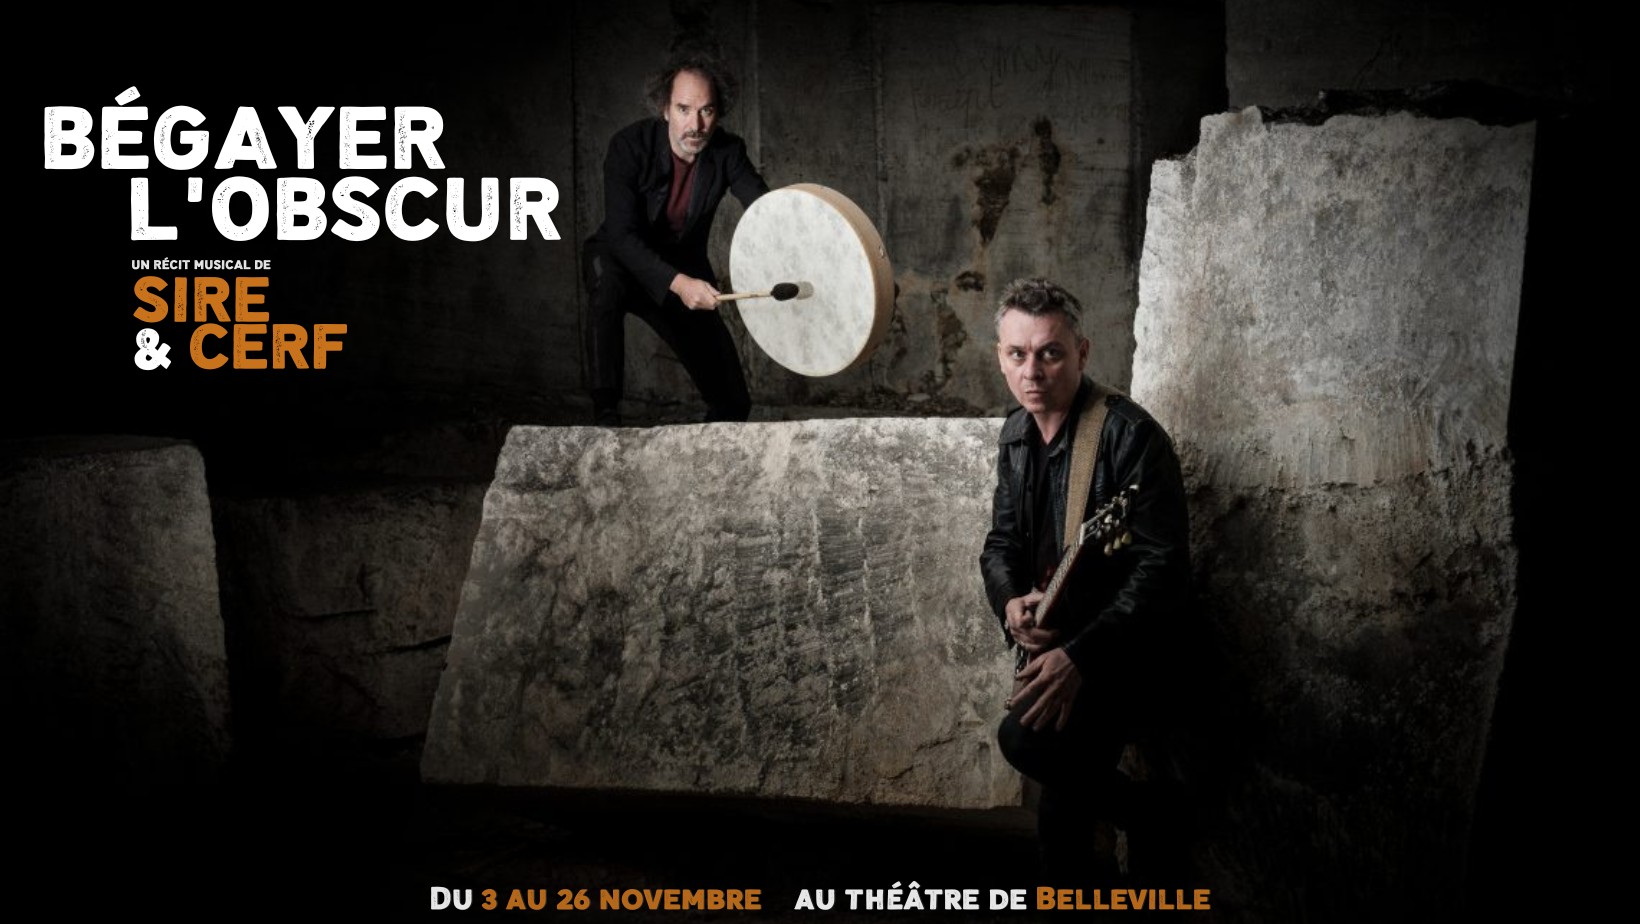 [live] David Sire & Cerf -Bégayer l'obscur au Théâtre de Belleville 